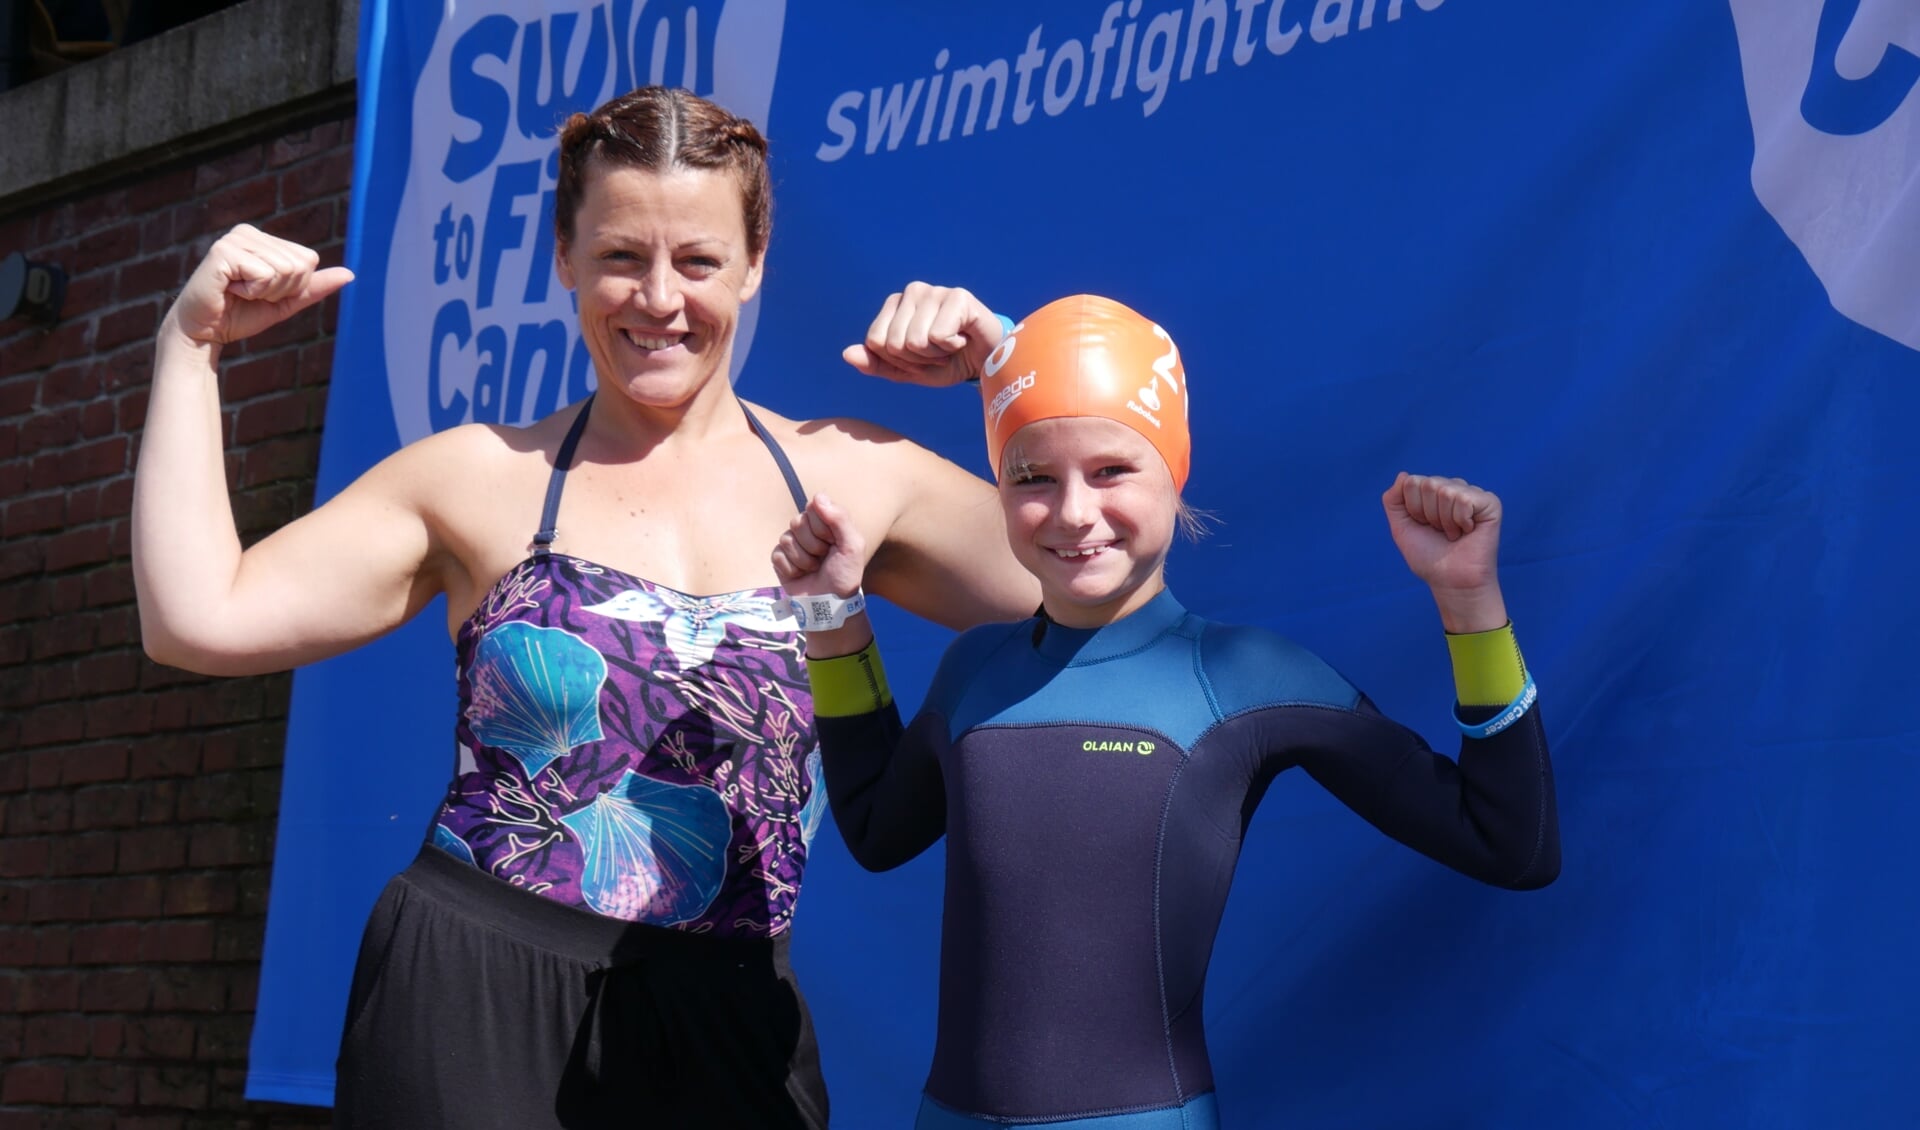 Deelnemers van de eerste editie van Swim to fight cancer